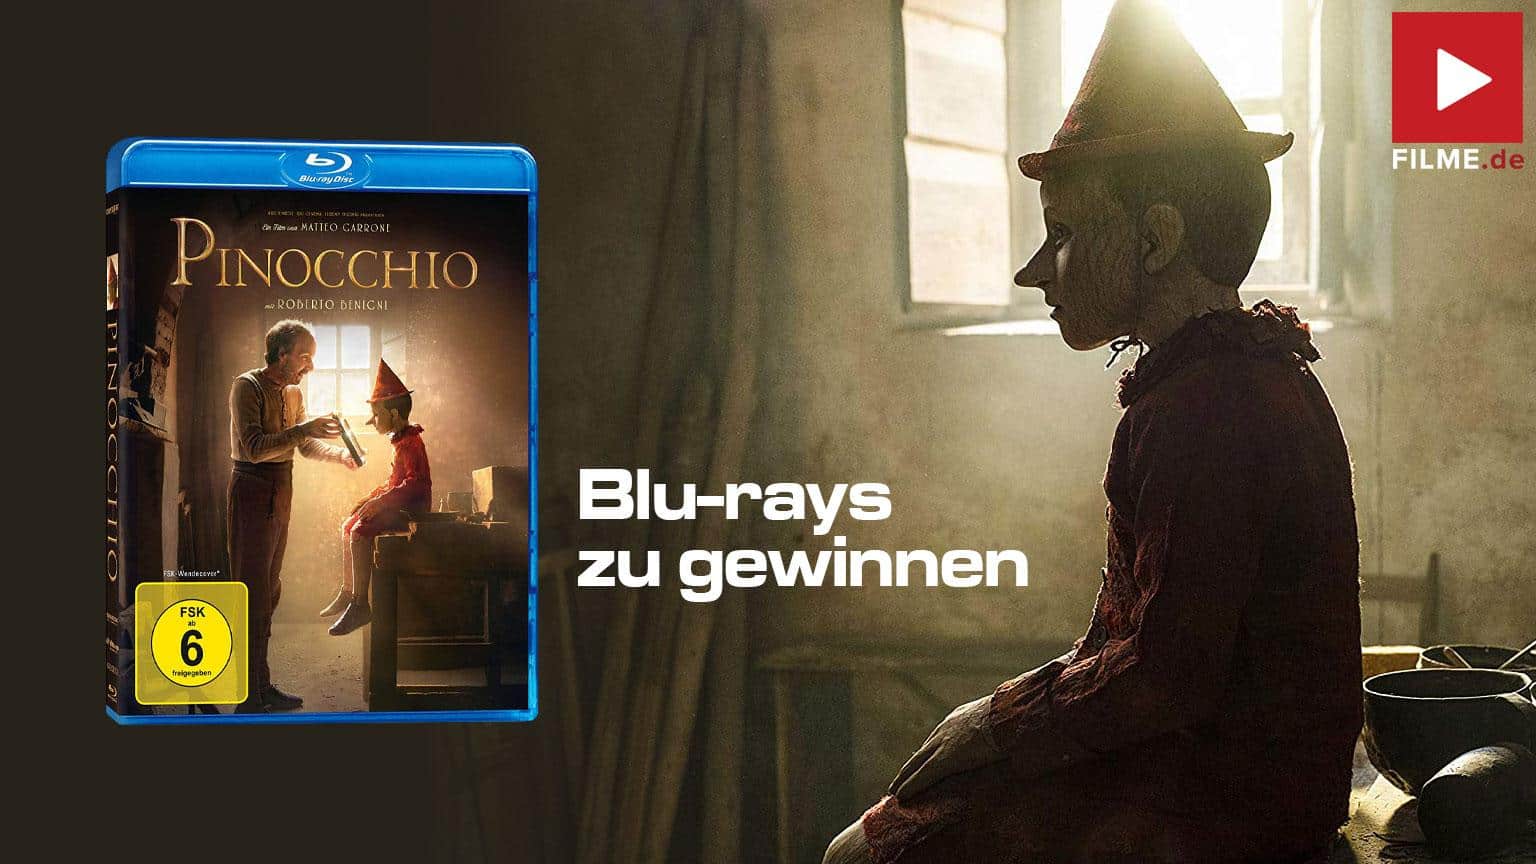 Pinocchio Film 2020 Gewinnspiel gewinnen Shop kaufen Blu-ray Mediabook Artikelbild